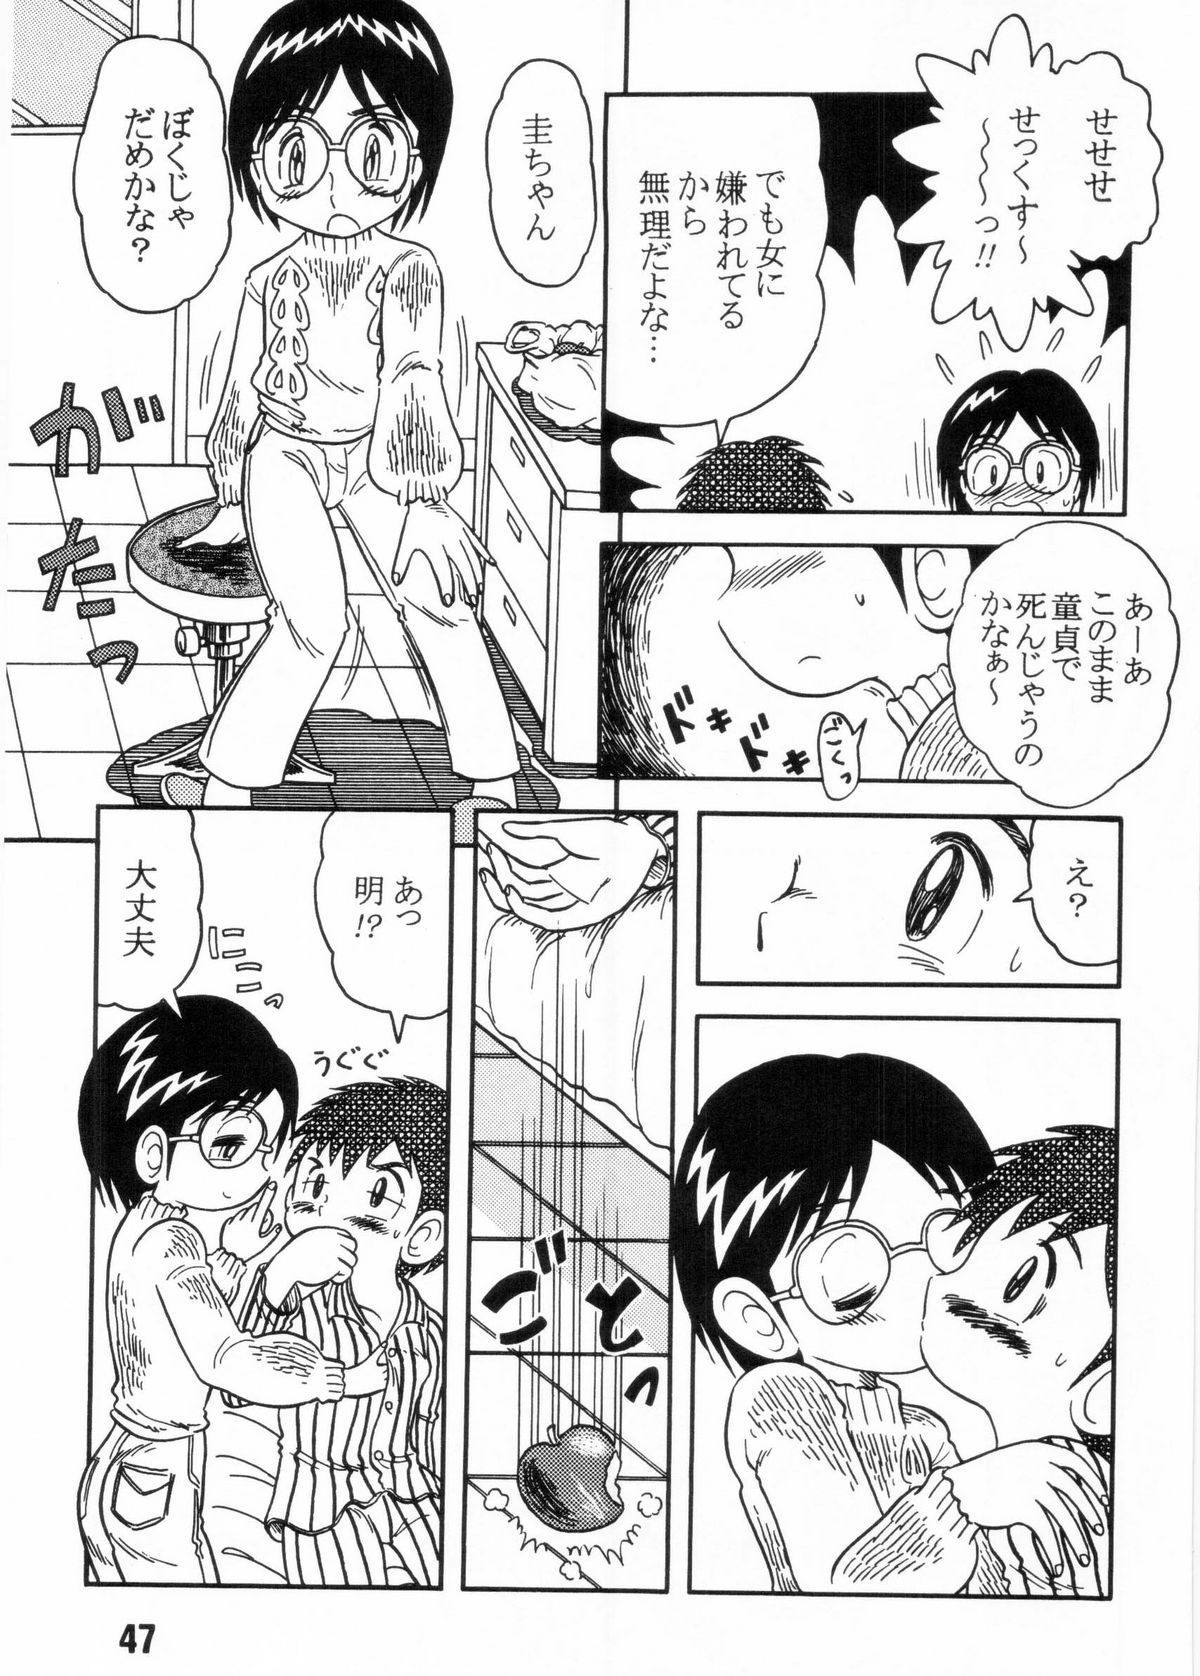 [Shota][Anthology] Nekketsu Project - Shounen Muscat Shake Vol.6 page 46 full